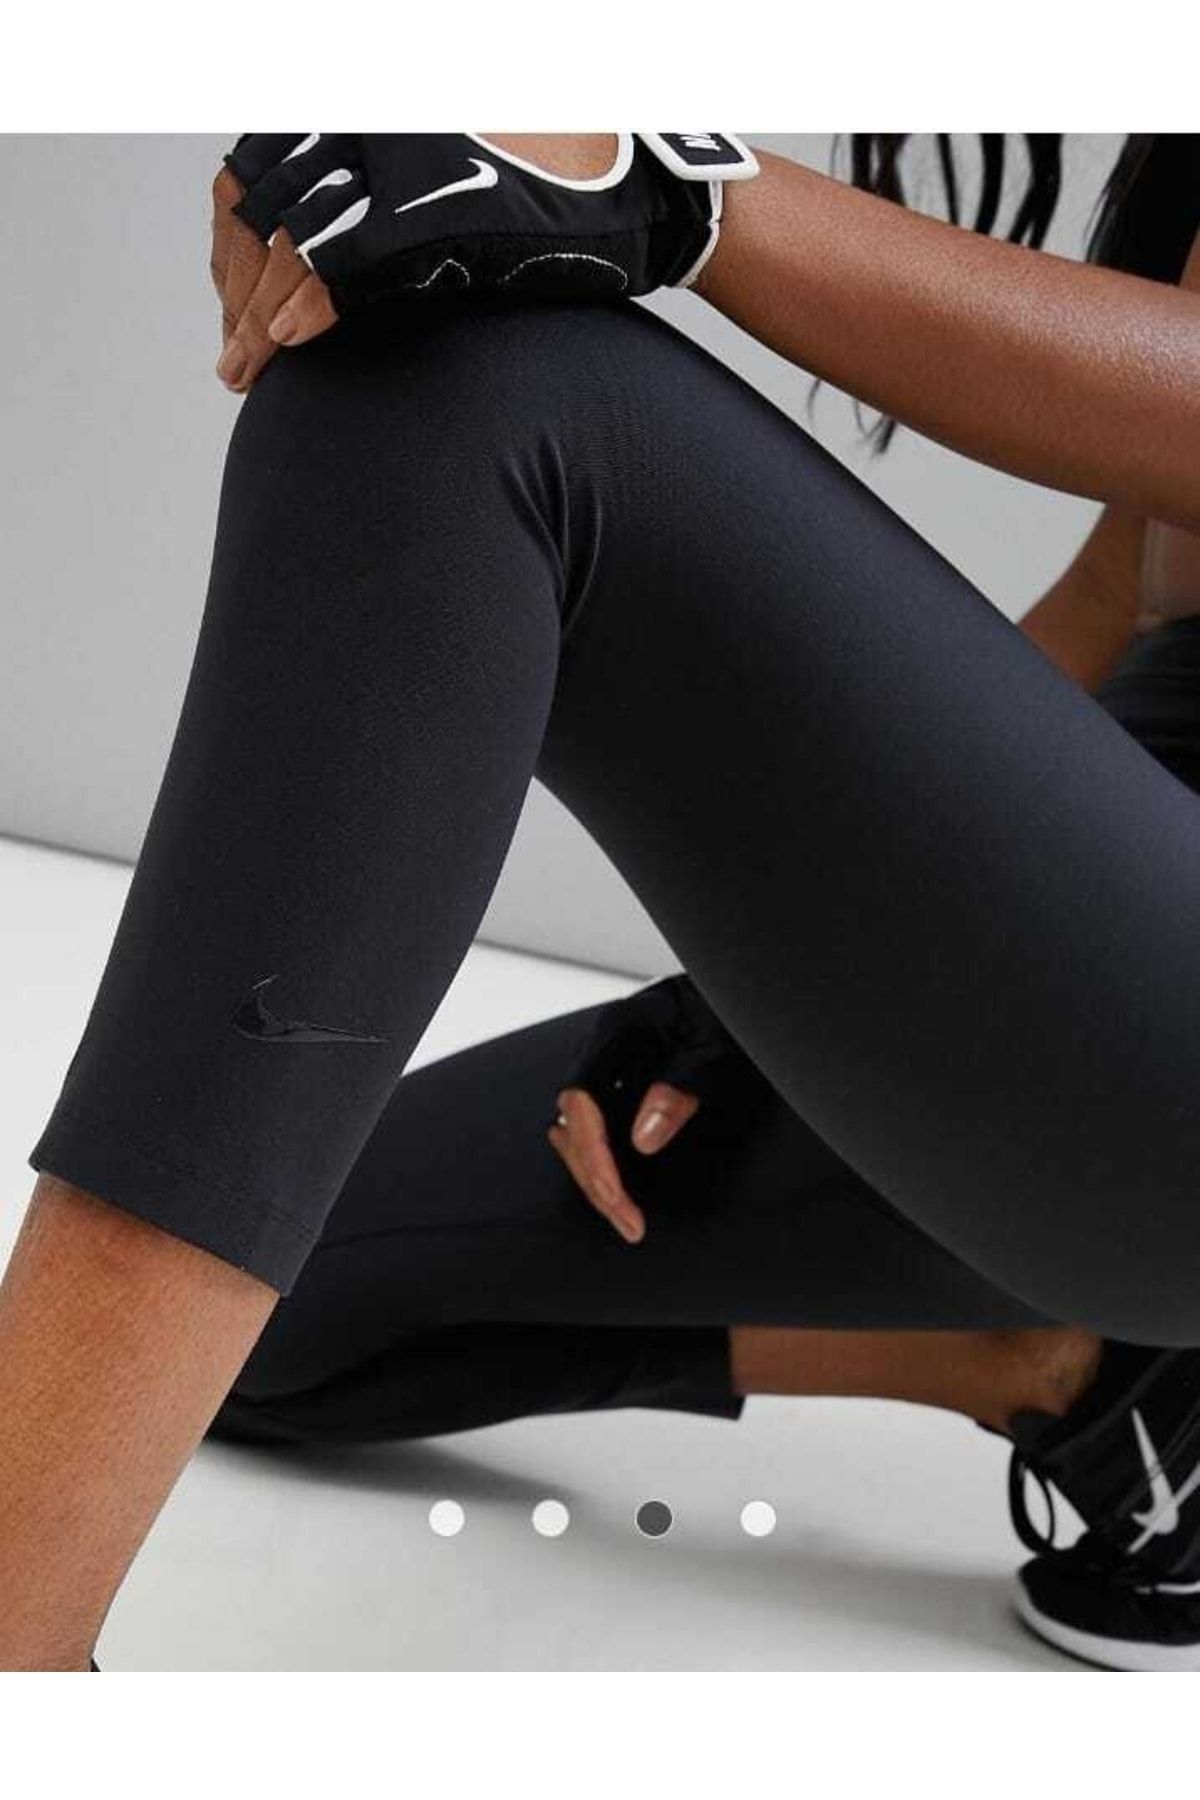 Nike One Normal Waist Traning Women's Capri Leggings - Trendyol